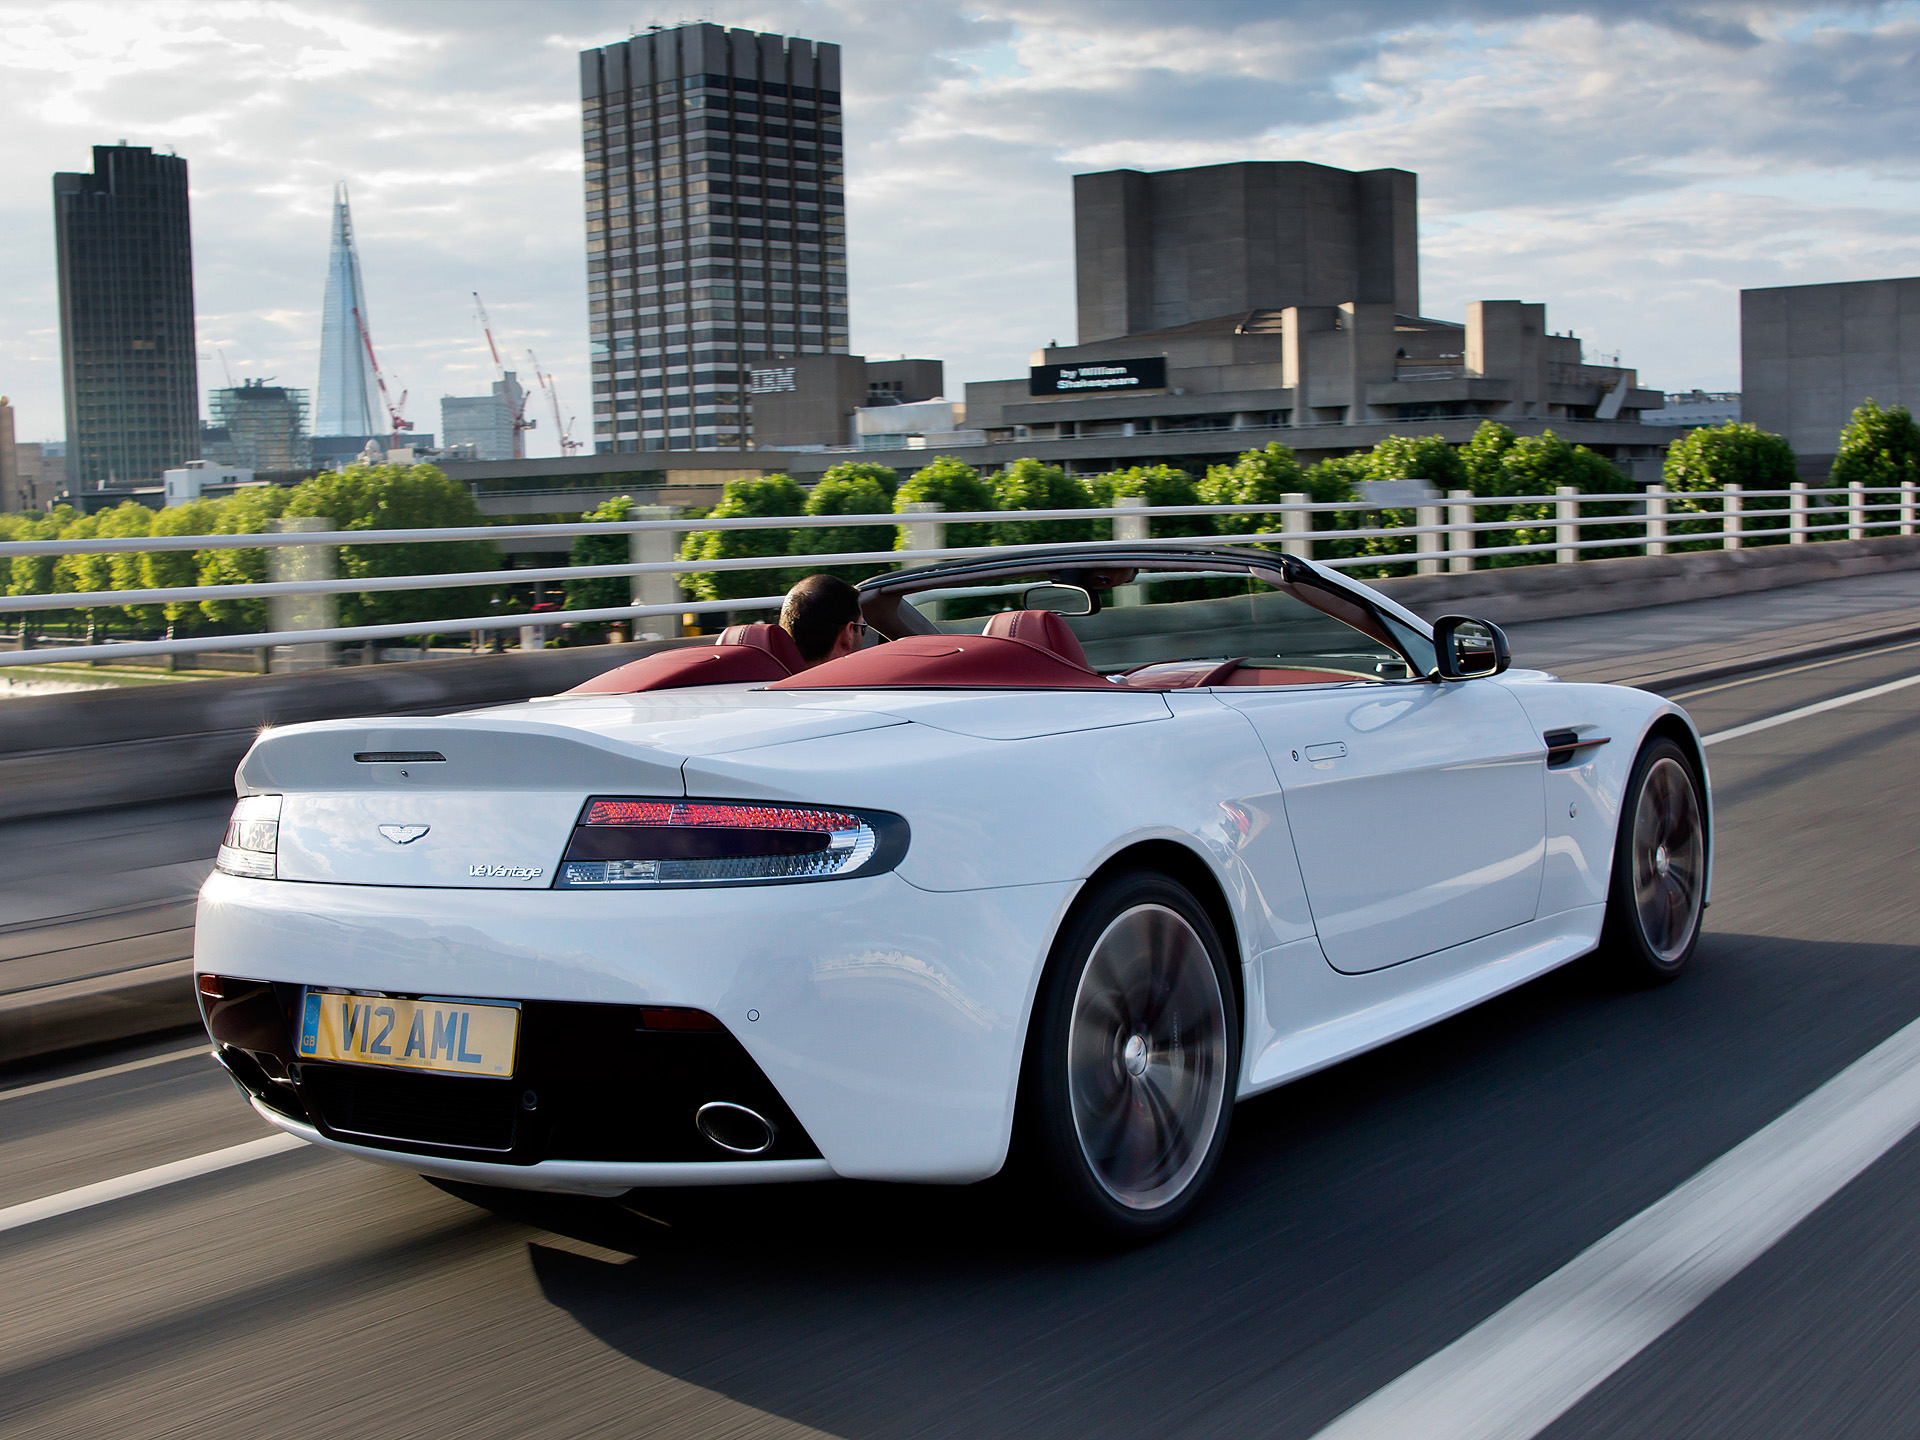 Descarga gratuita de fondo de pantalla para móvil de Aston Martin V12 Vantage, Aston Martin, Vehículos.